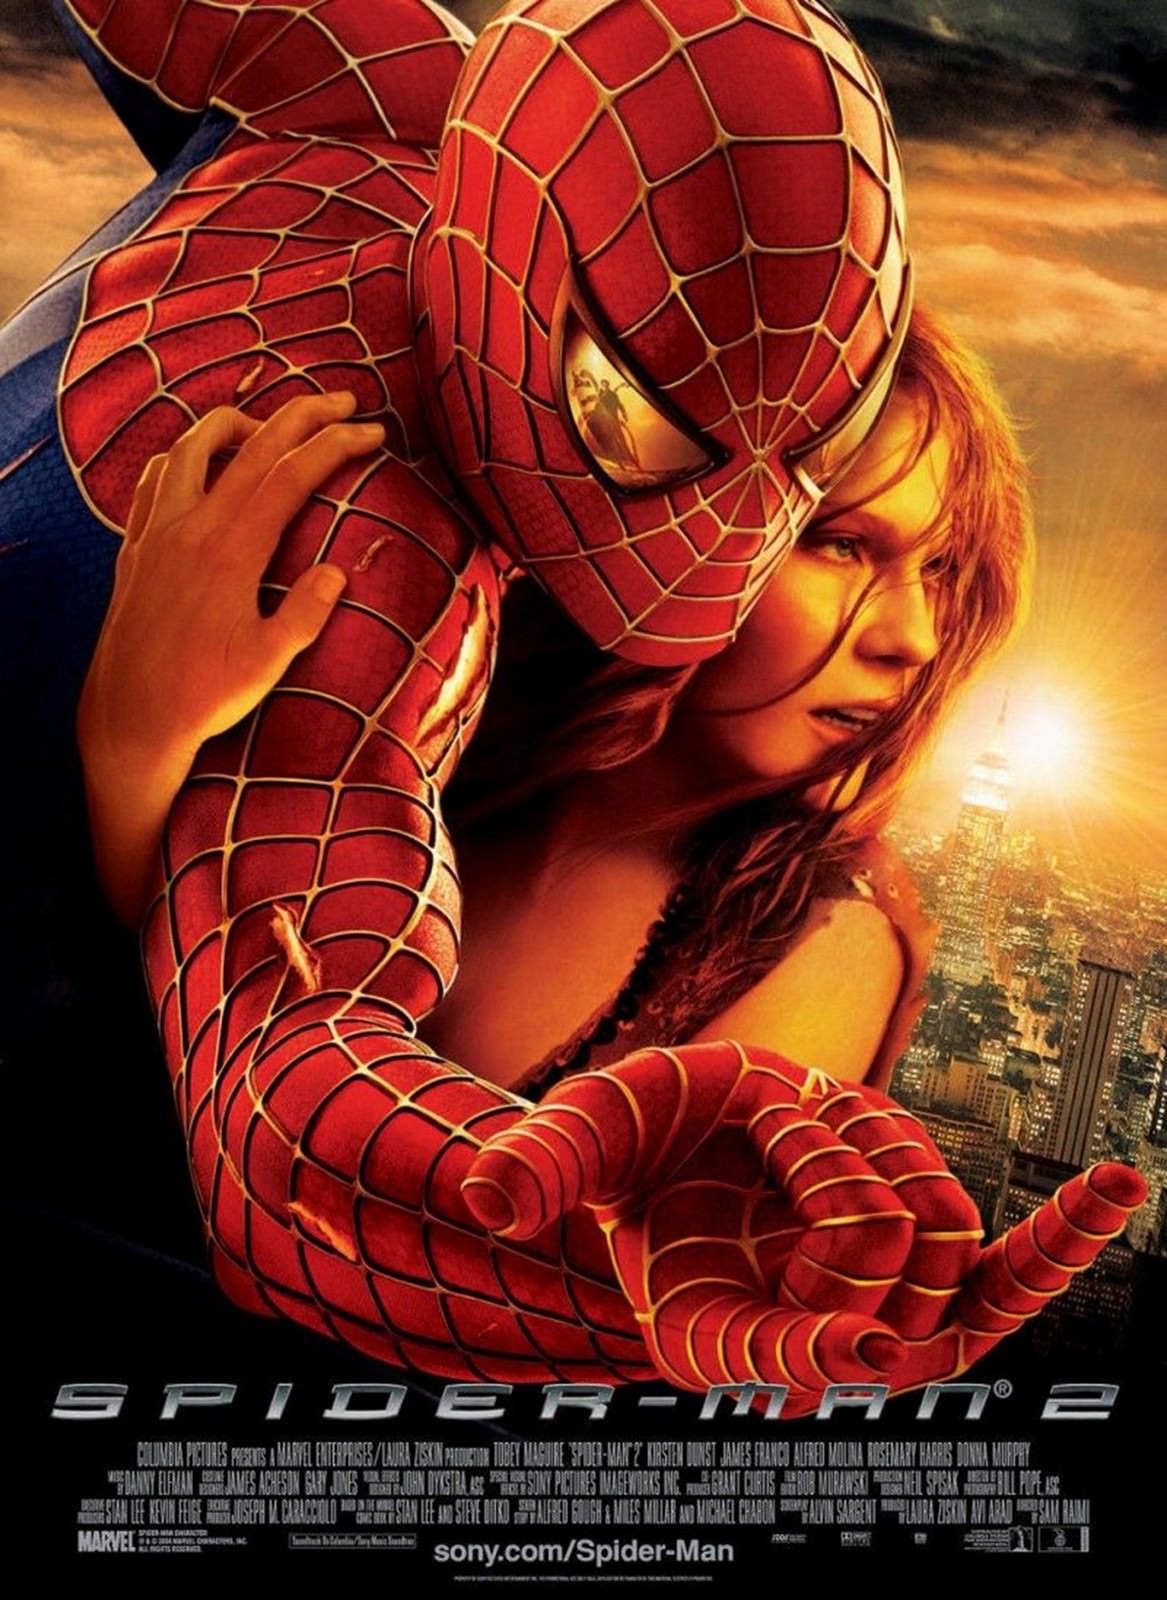 Movie, Spider-Man 2(美國, 2004年) / 蜘蛛人2(台灣) / 蜘蛛侠2(中國) / 蜘蛛俠2(香港), 電影海報, 美國